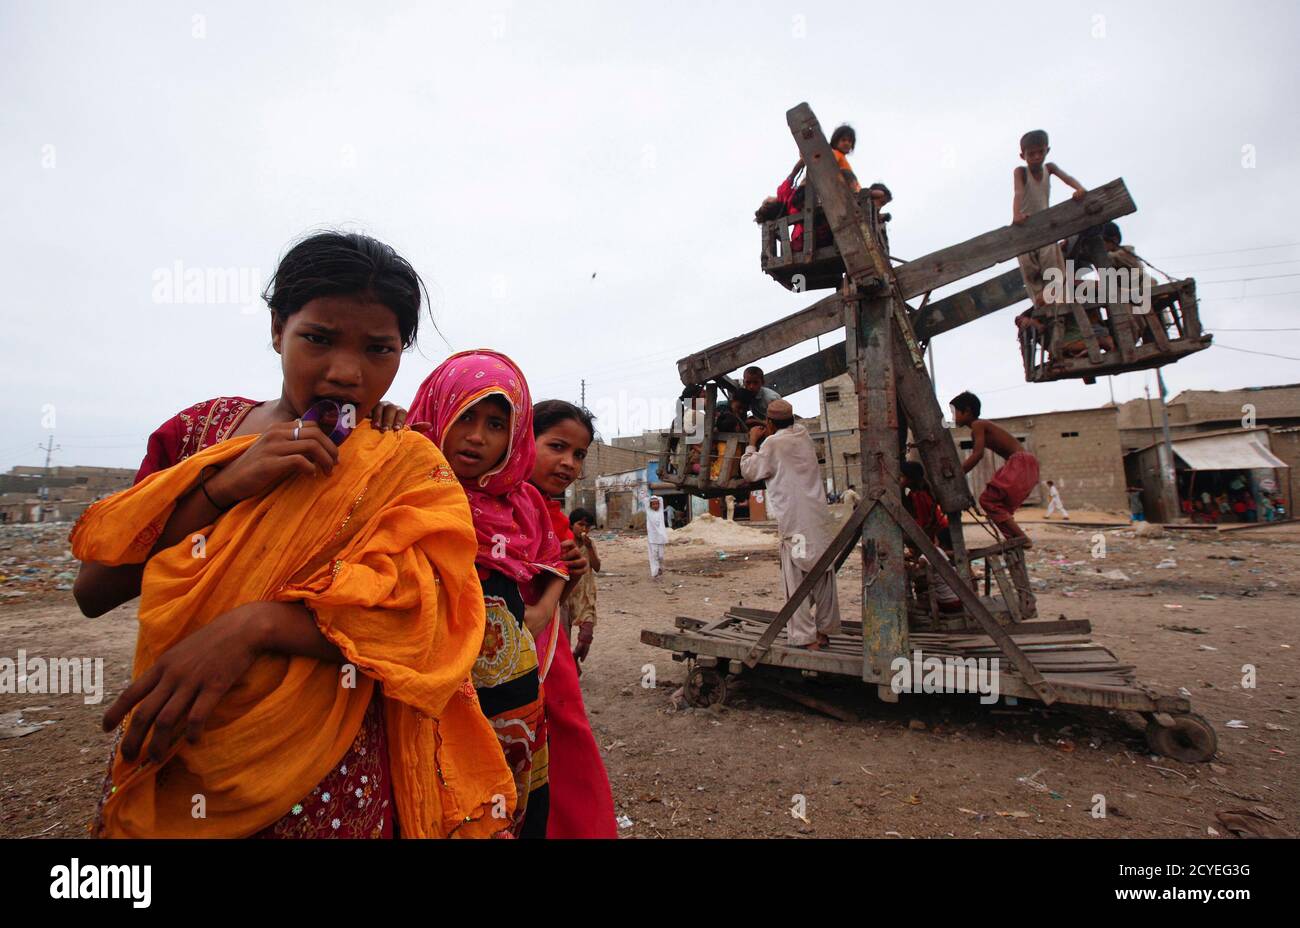 Kinder aus einem Slum werden in Karachi am 19. August 2012 bei einer Schaukelfahrt in der Nähe von anderen dargestellt. REUTERS/AKHTAR SOOMRO (PAKISTAN - TAGS: GESELLSCHAFT ARMUT TPX BILDER DES TAGES) Stockfoto